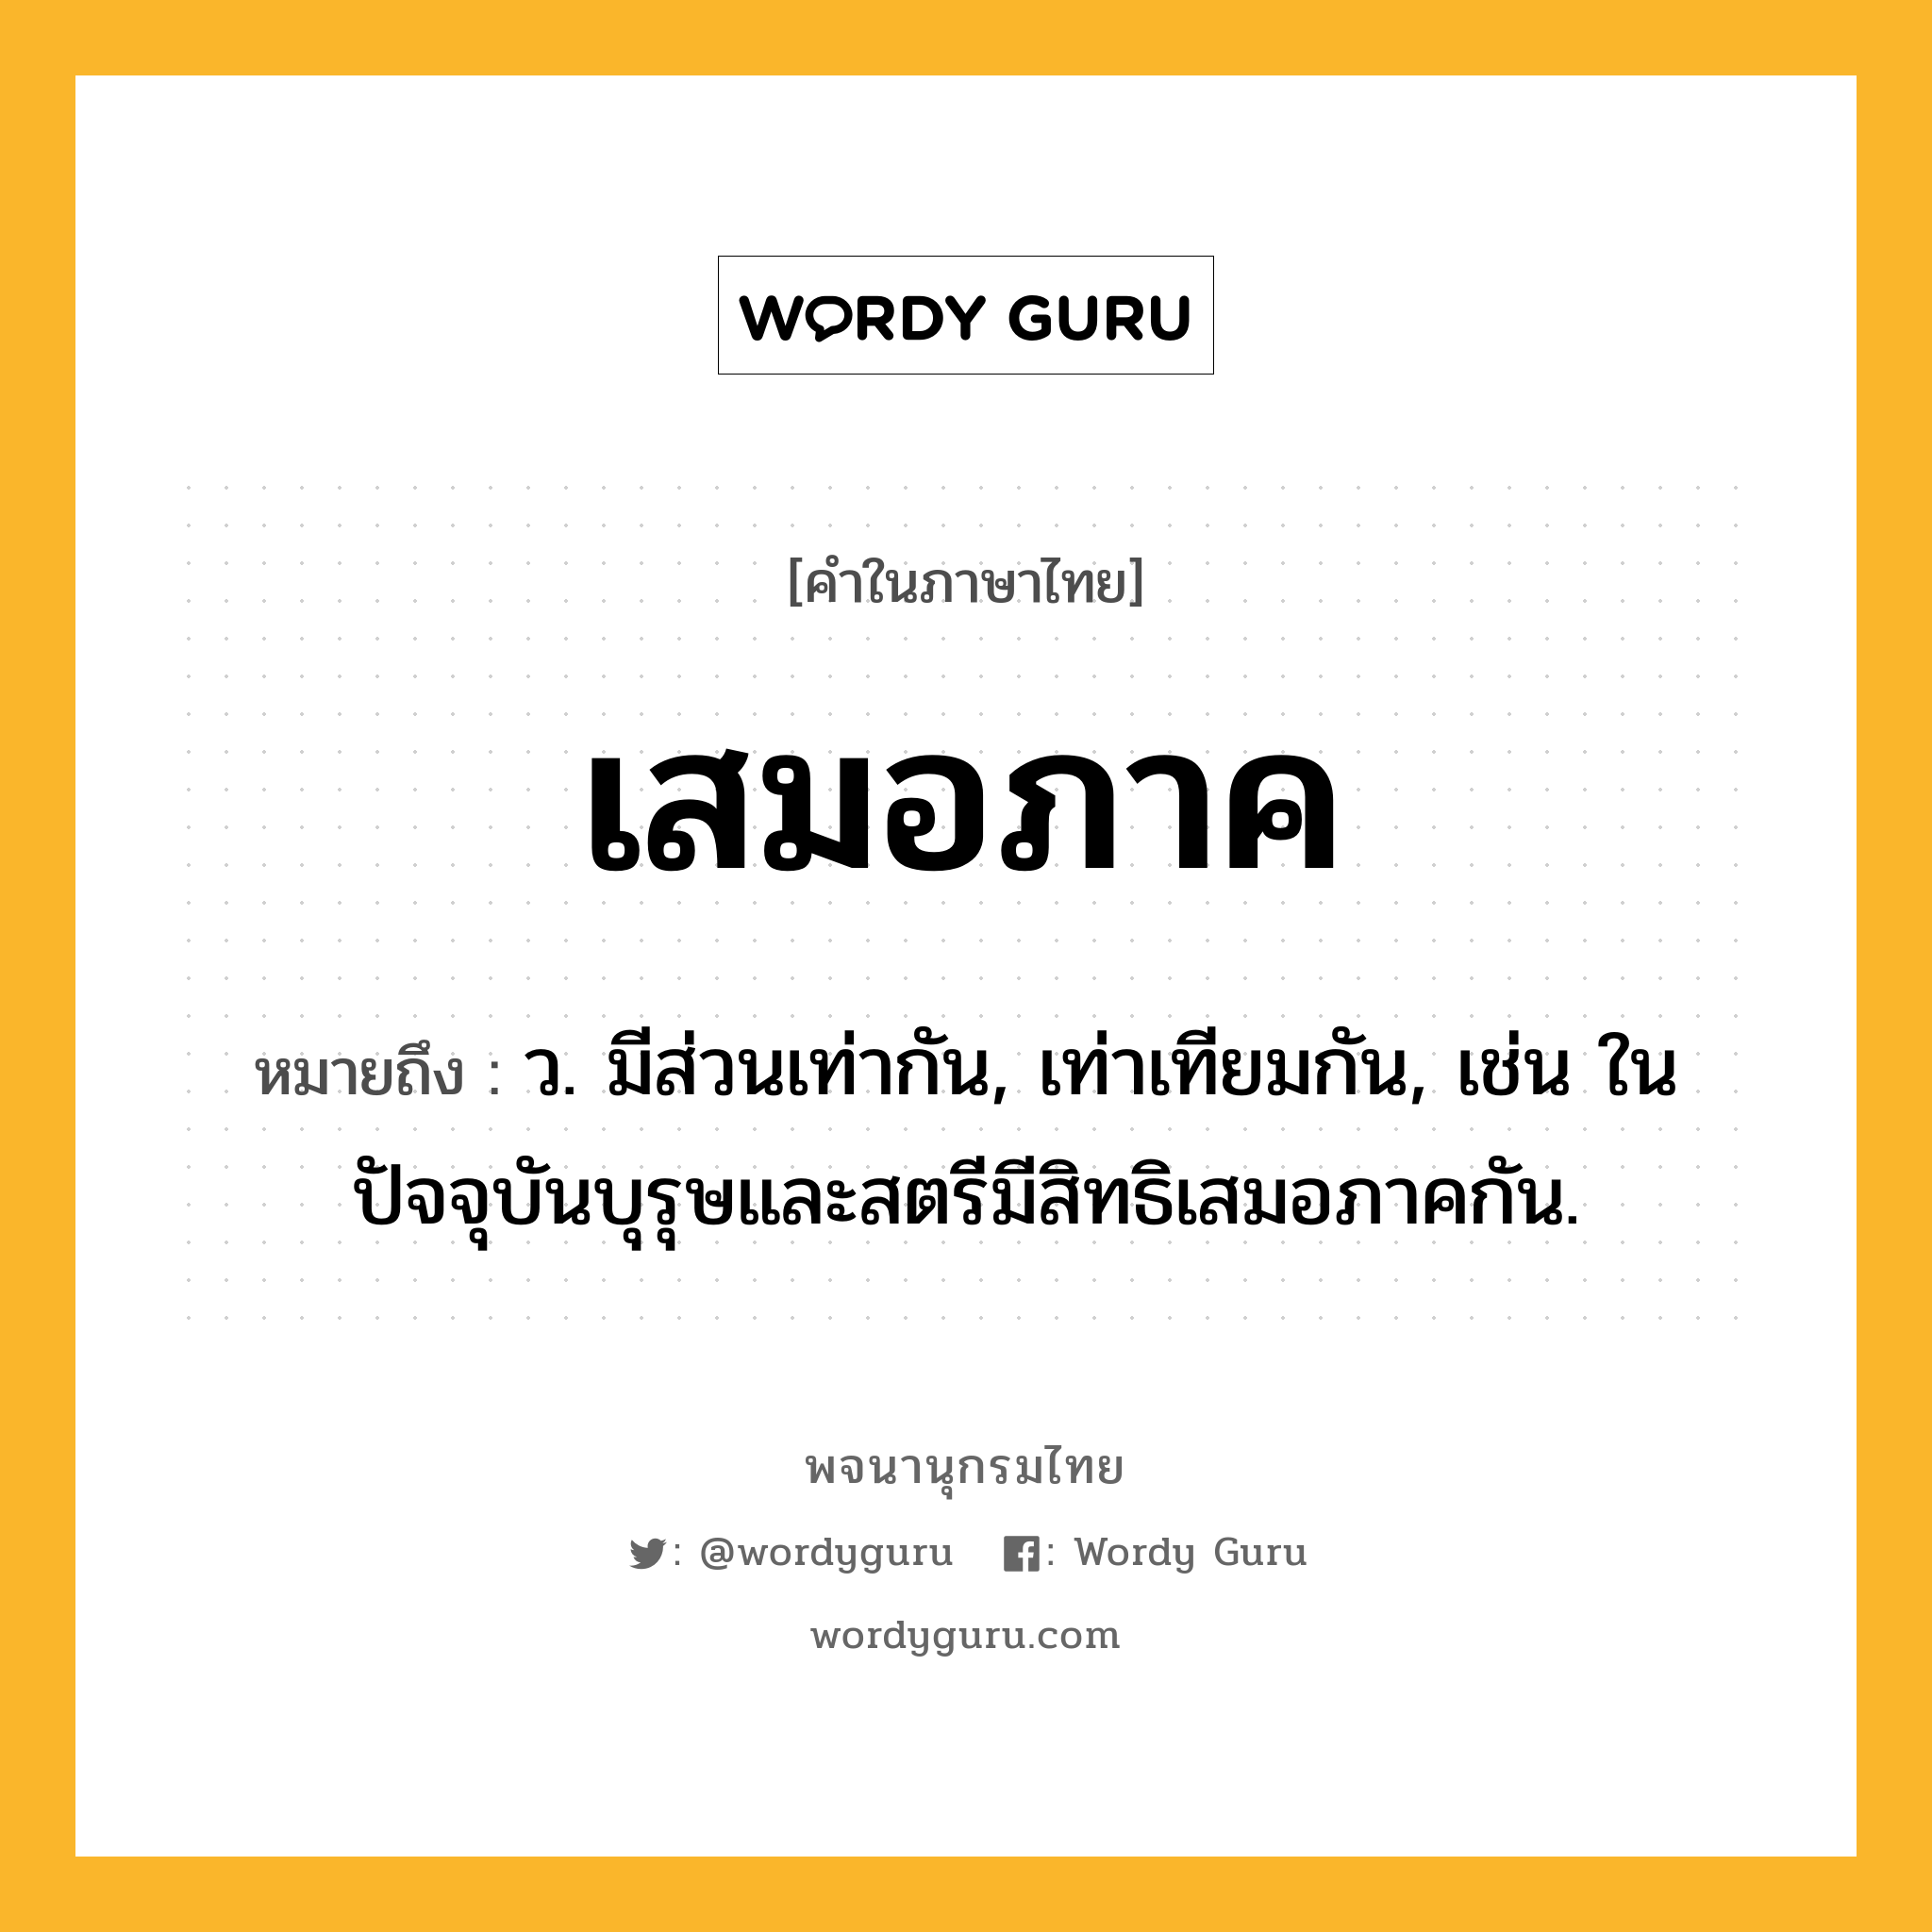 เสมอภาค ความหมาย หมายถึงอะไร?, คำในภาษาไทย เสมอภาค หมายถึง ว. มีส่วนเท่ากัน, เท่าเทียมกัน, เช่น ในปัจจุบันบุรุษและสตรีมีสิทธิเสมอภาคกัน.